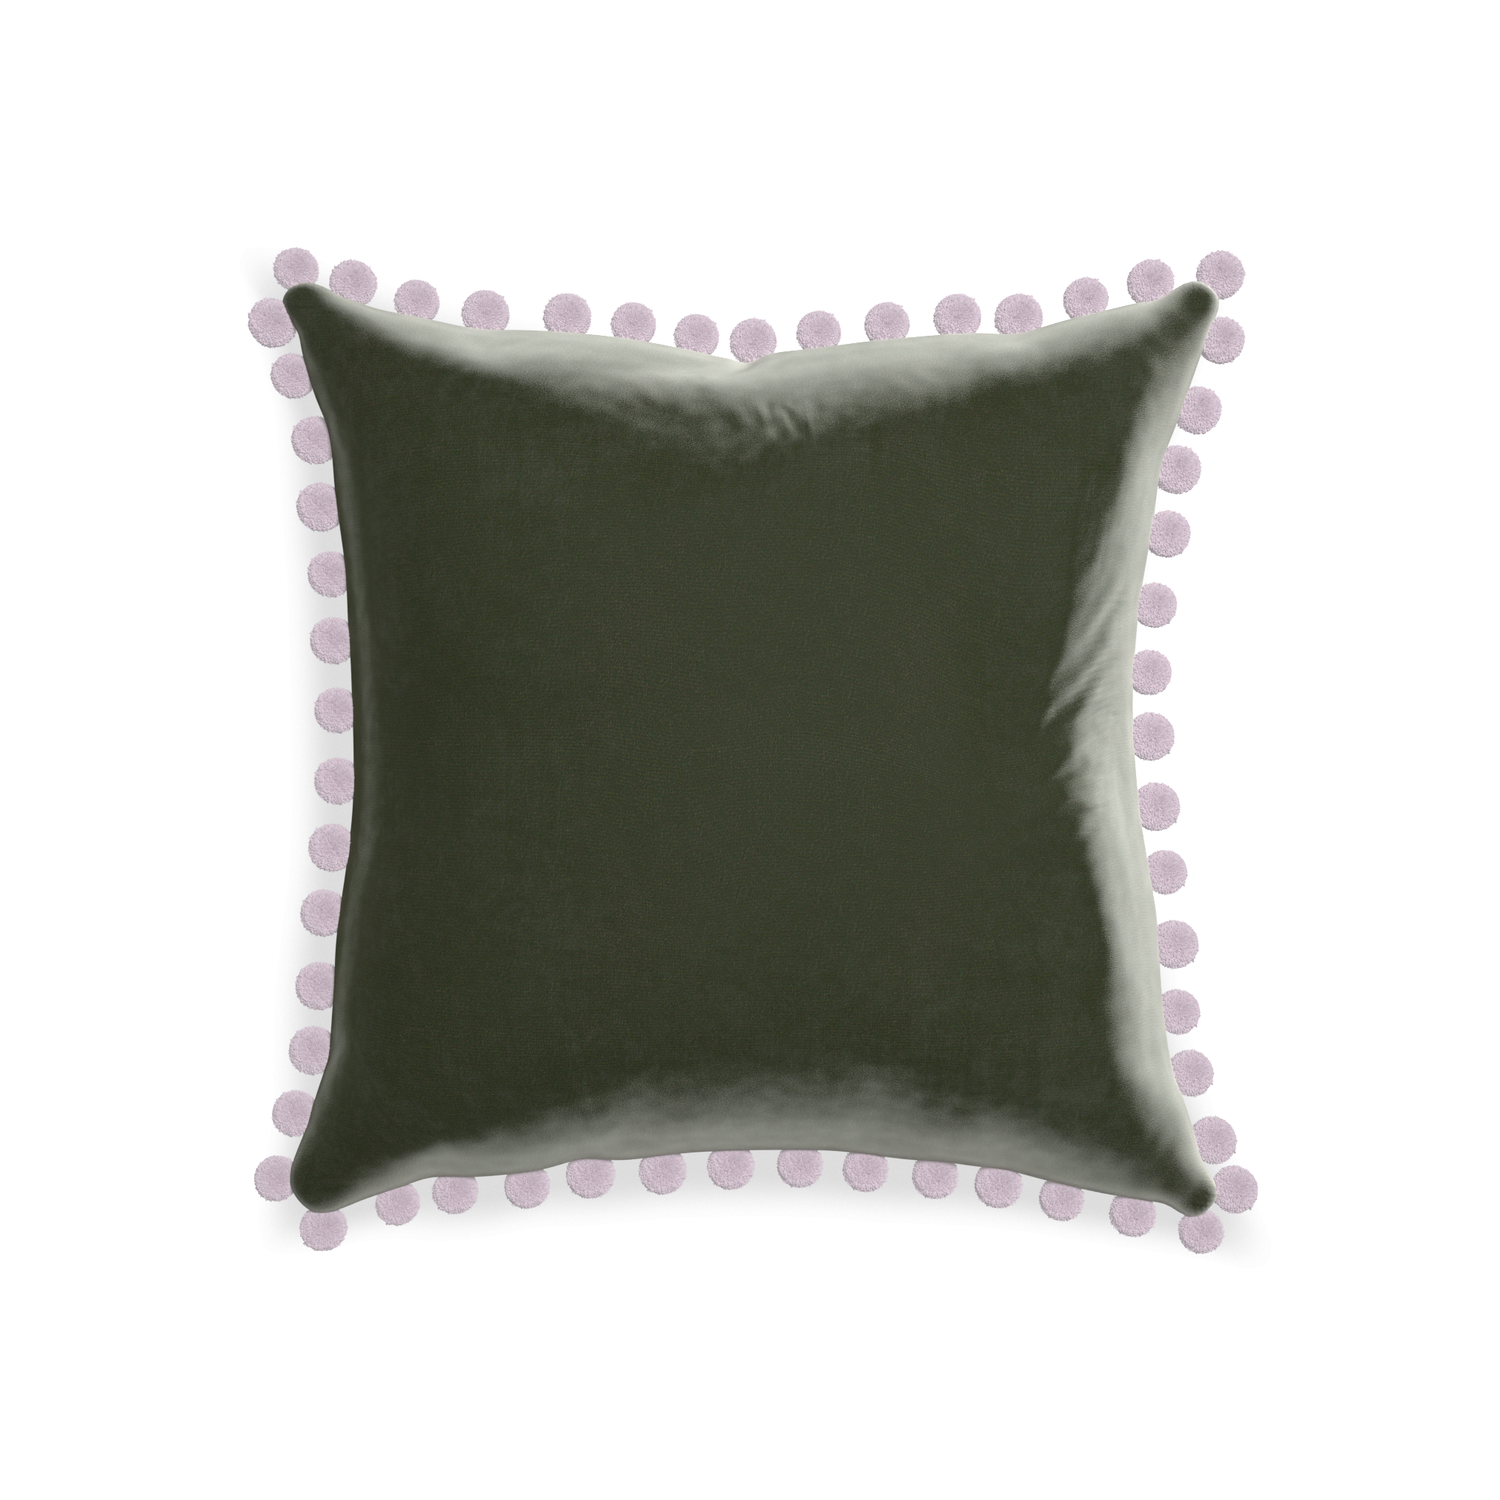 square fern green velvet pillow with lilac pom poms